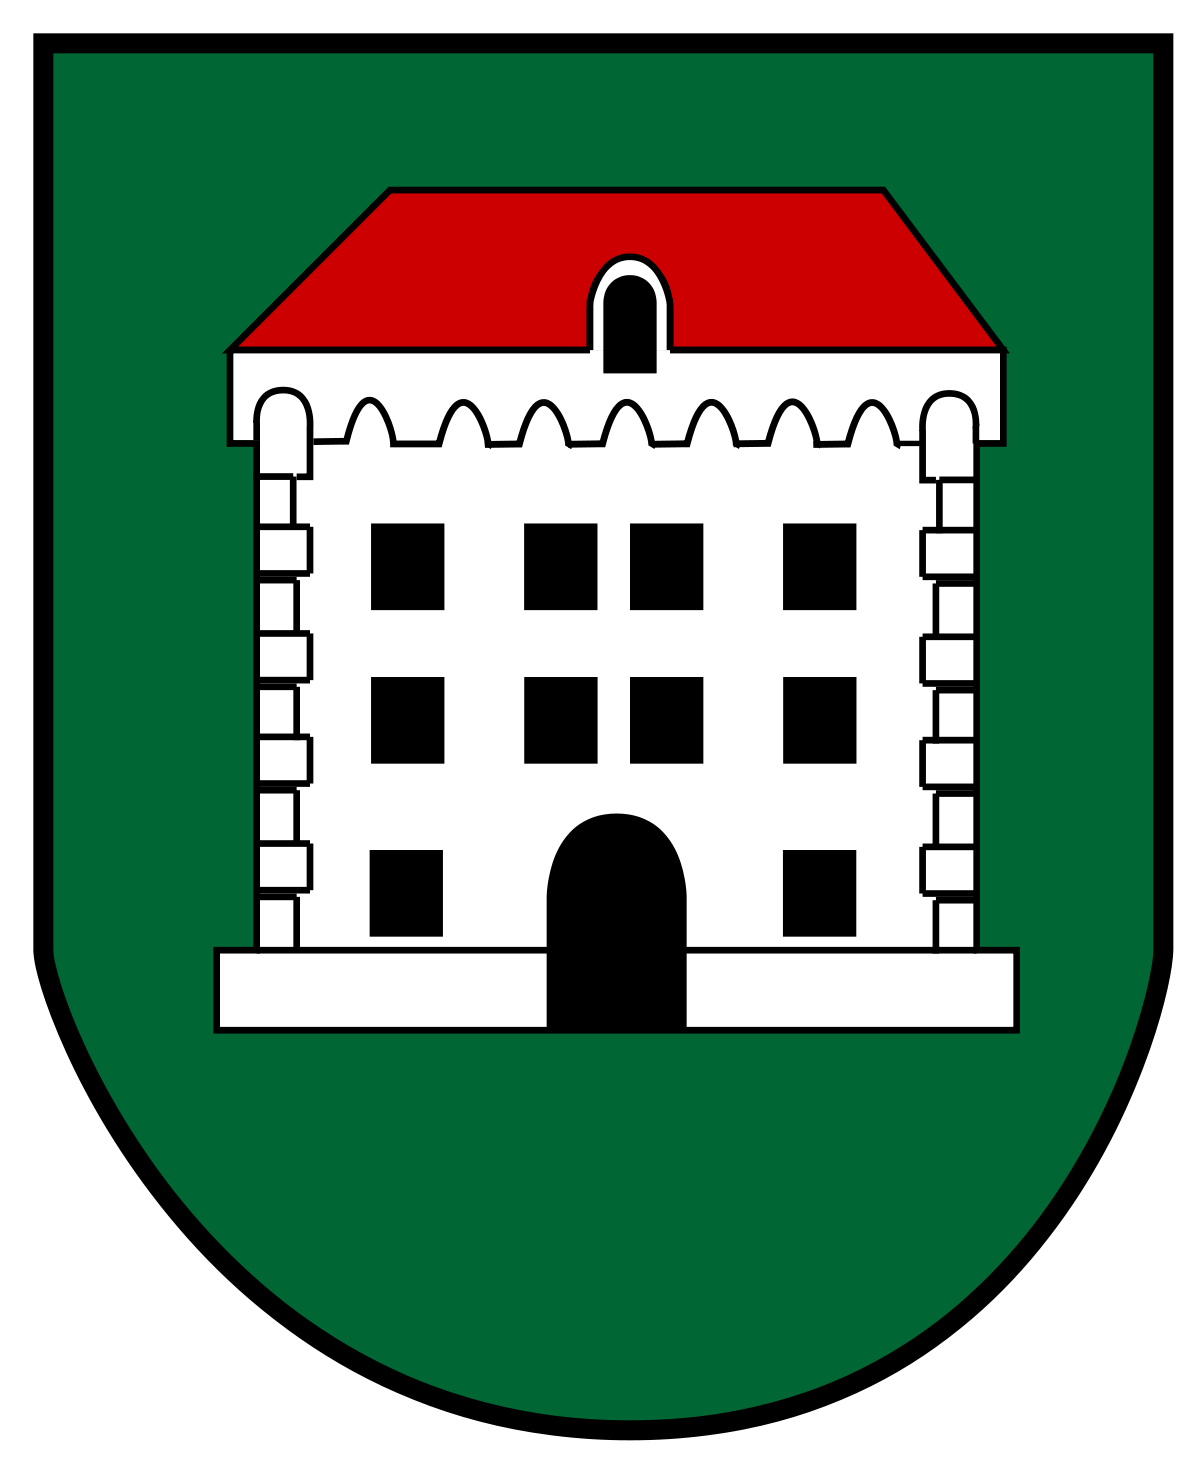 Marktgemeinde Vorchdorf